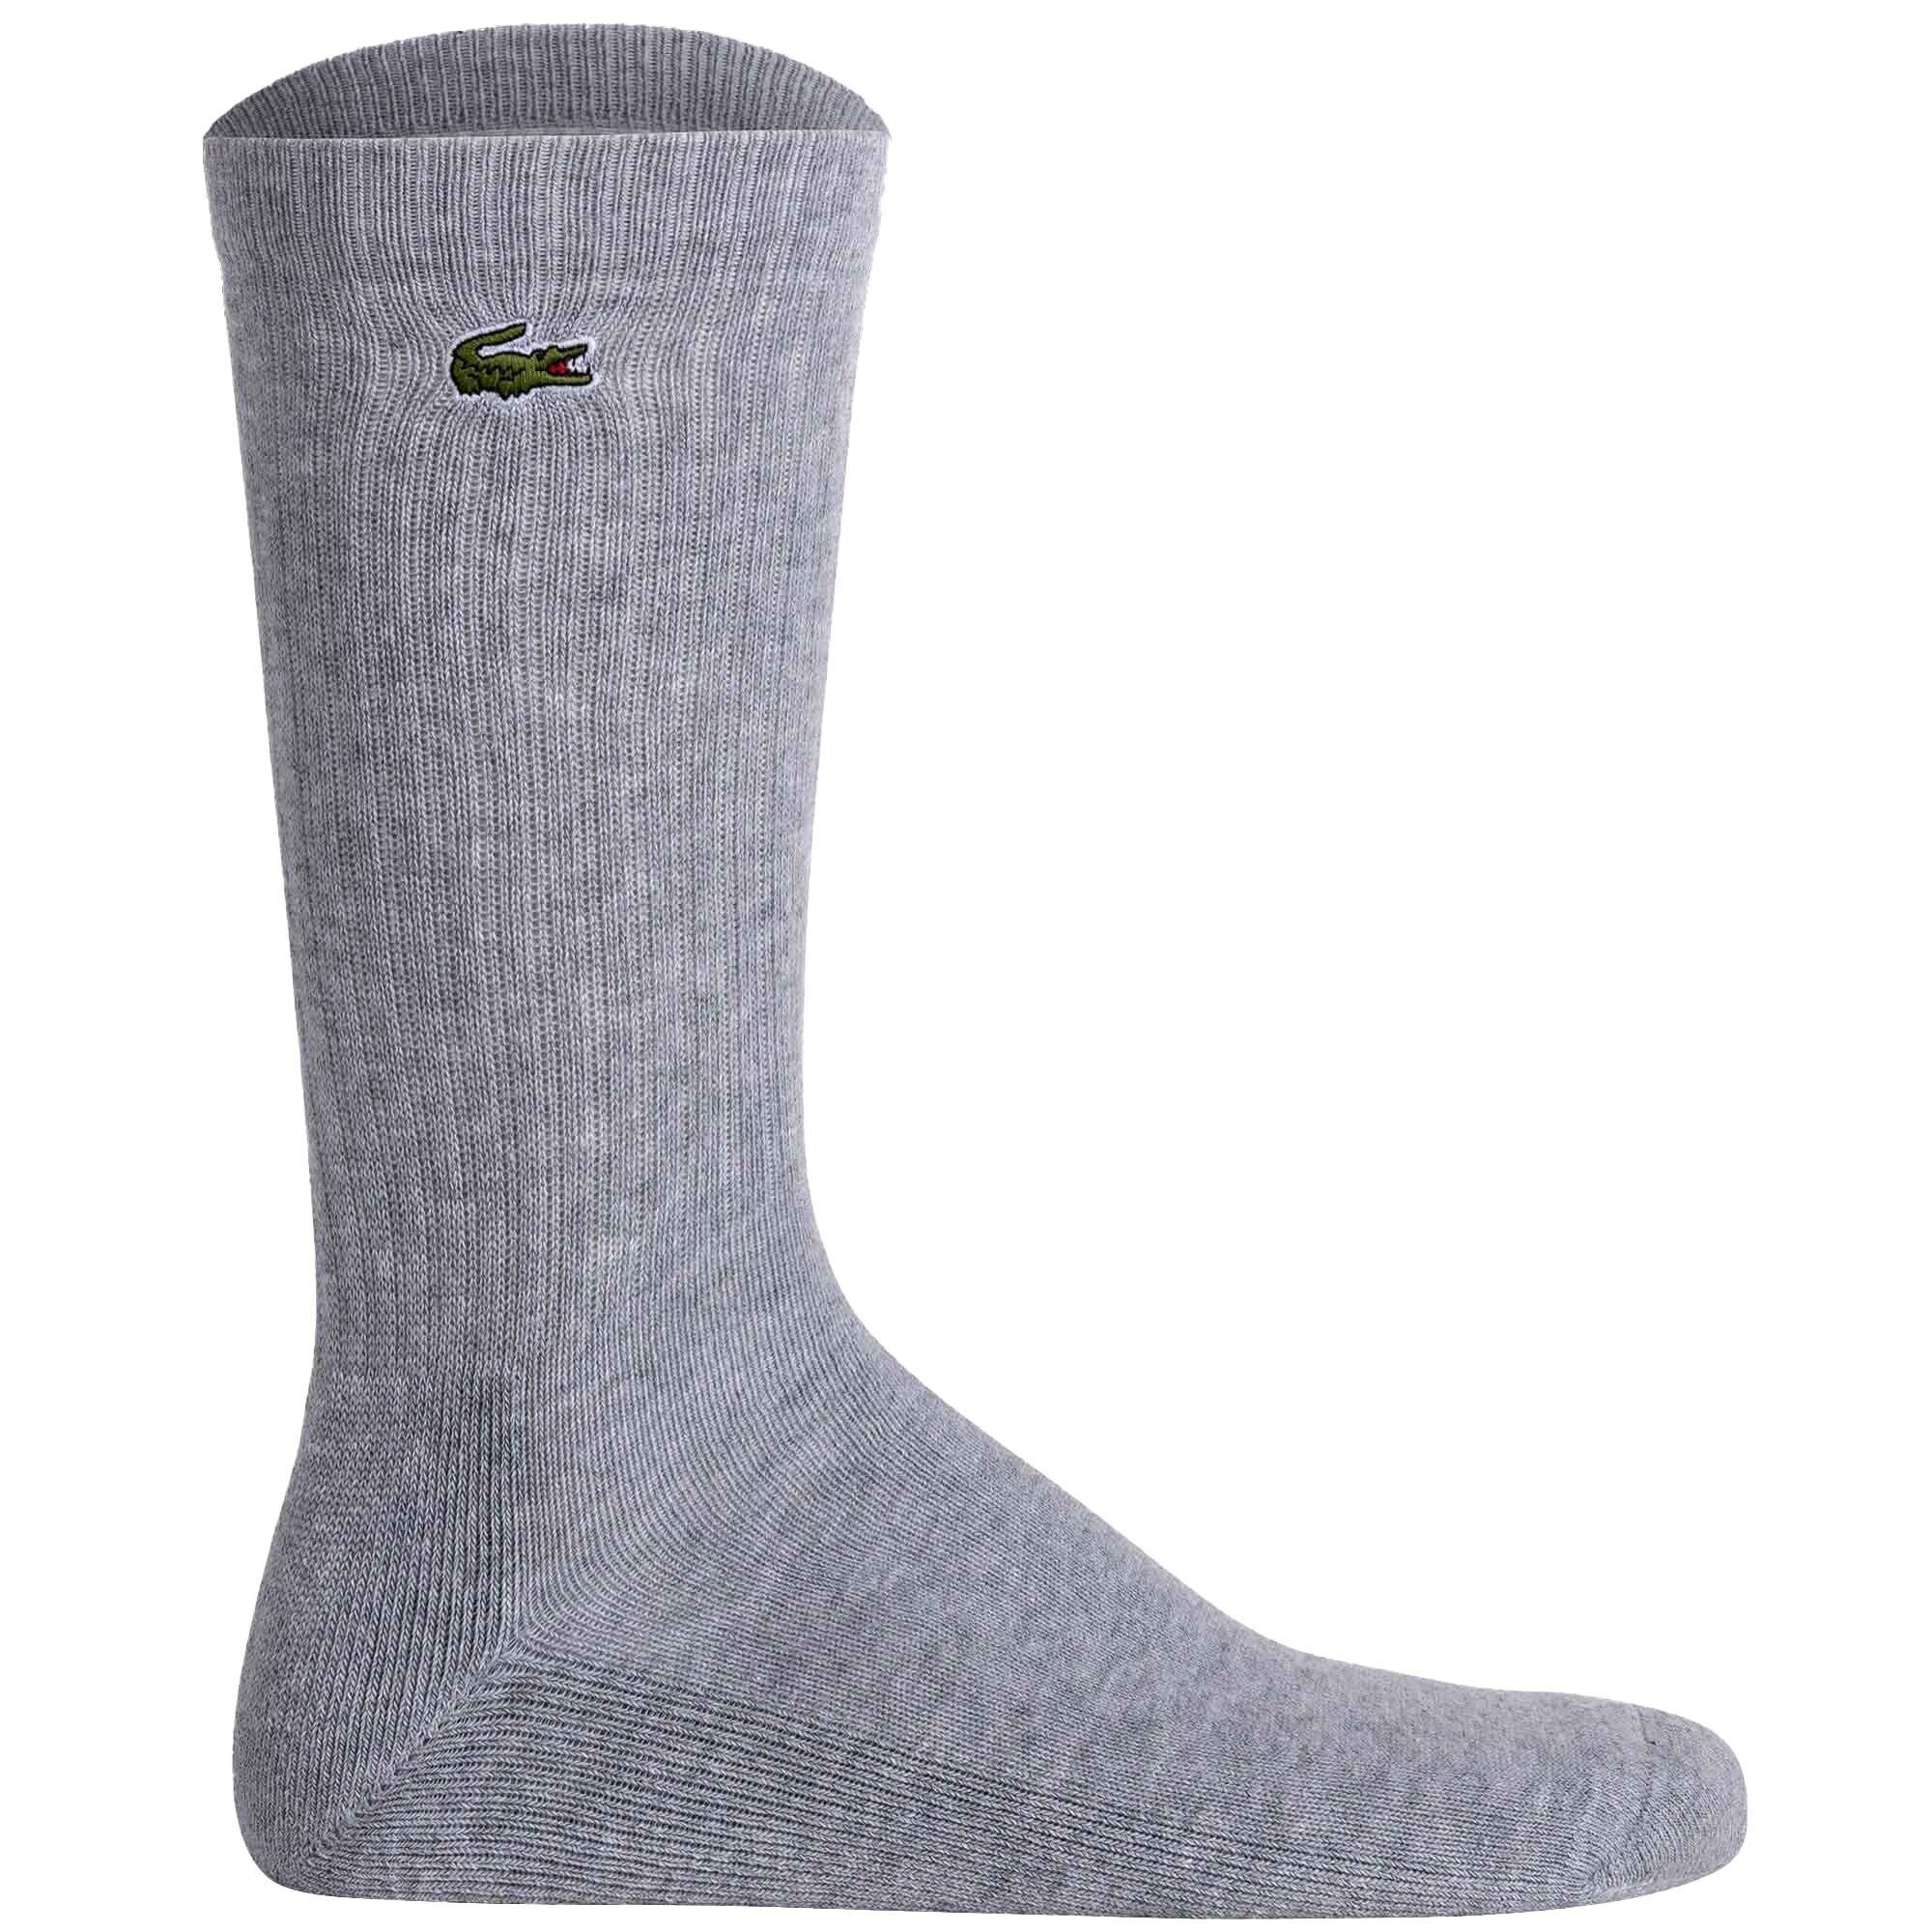 Weiß/Grau/Dunkelblau Socken, Tennissocken Pack Kurzsocken Unisex - 6er Lacoste